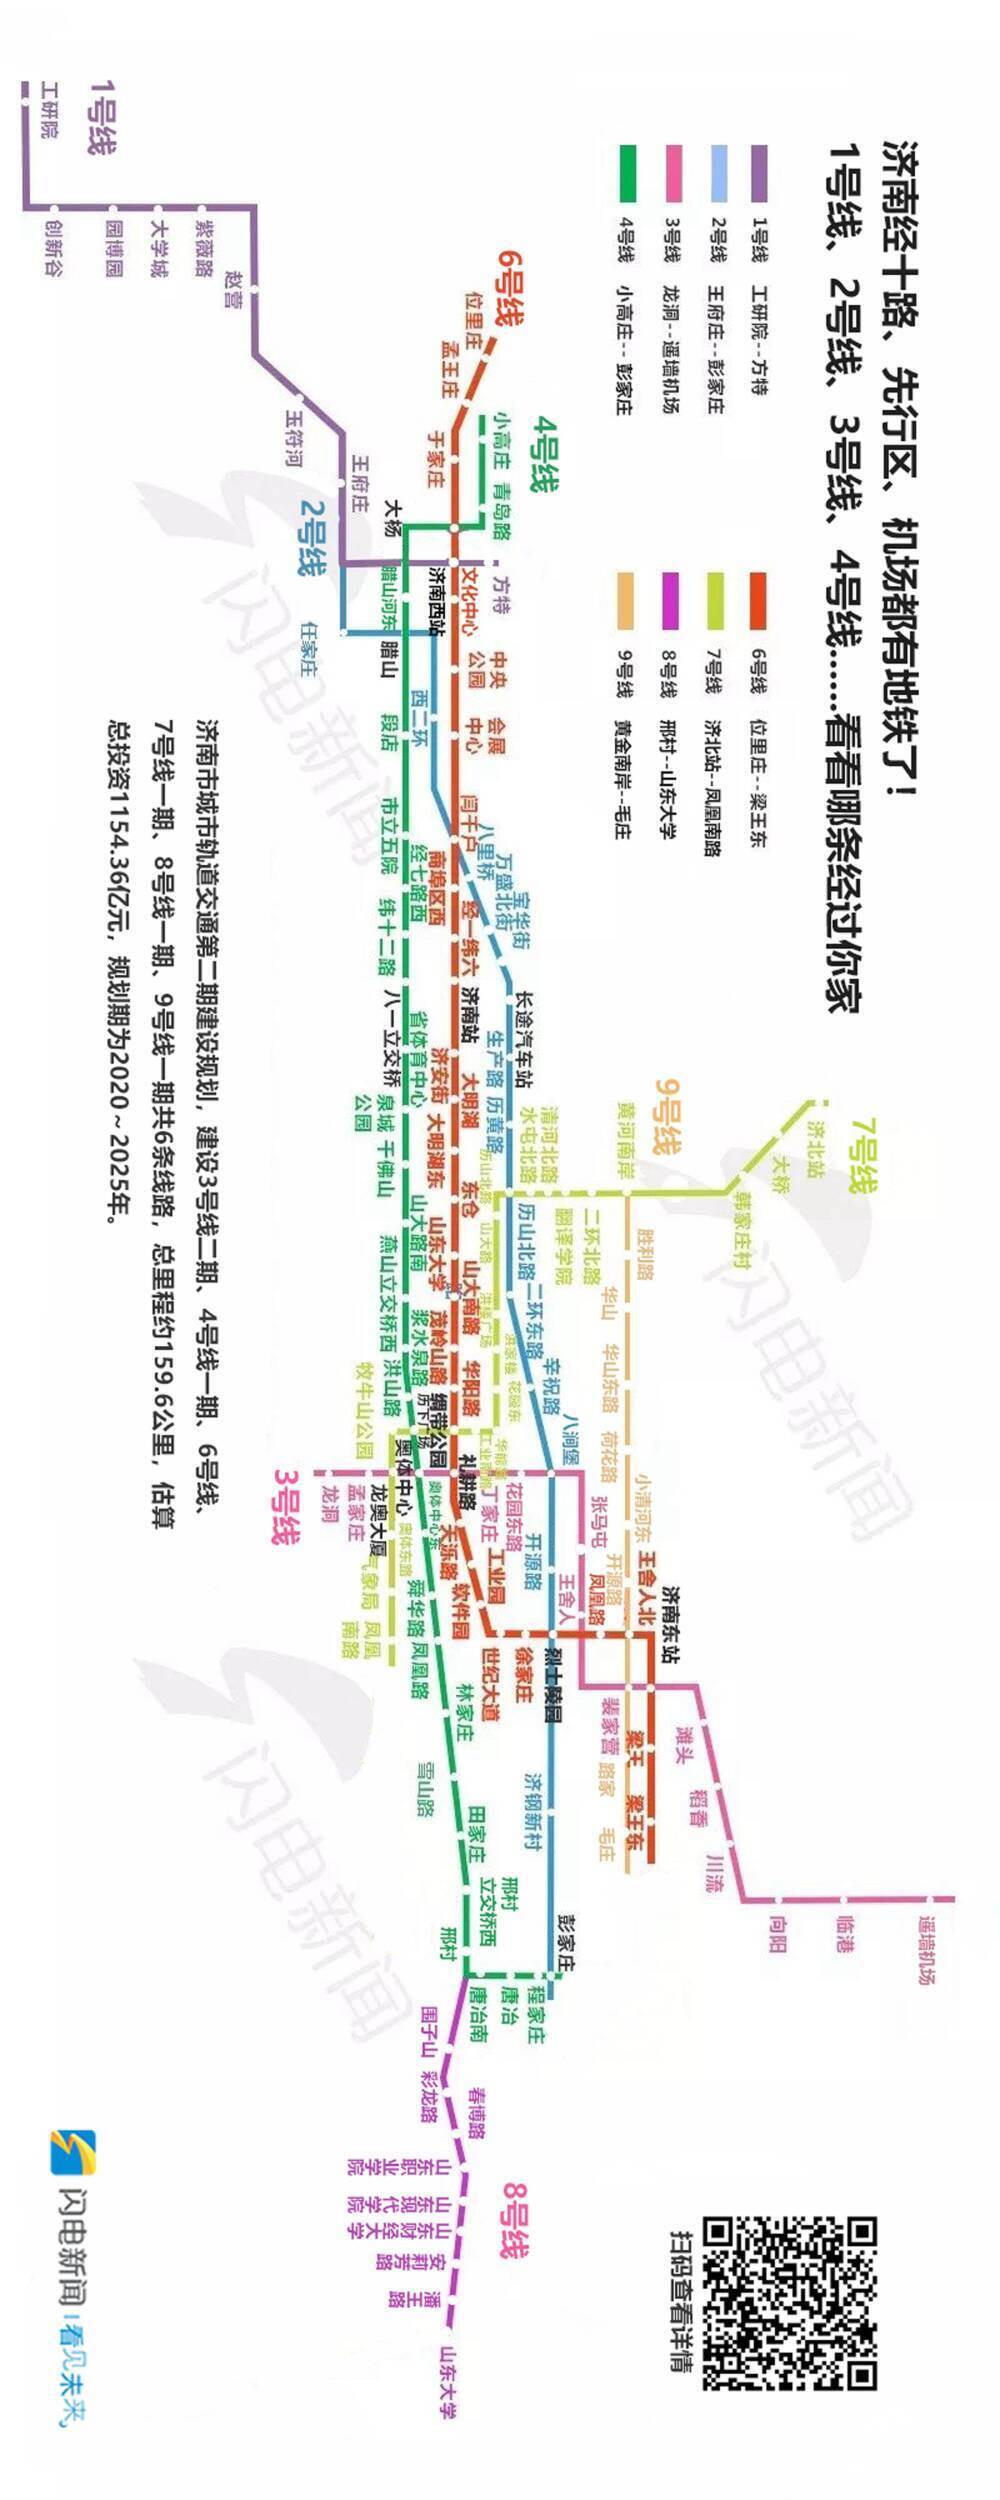 目前,济南轨道交通二期规划已经完成了编制地铁线网规划,编制建设规划